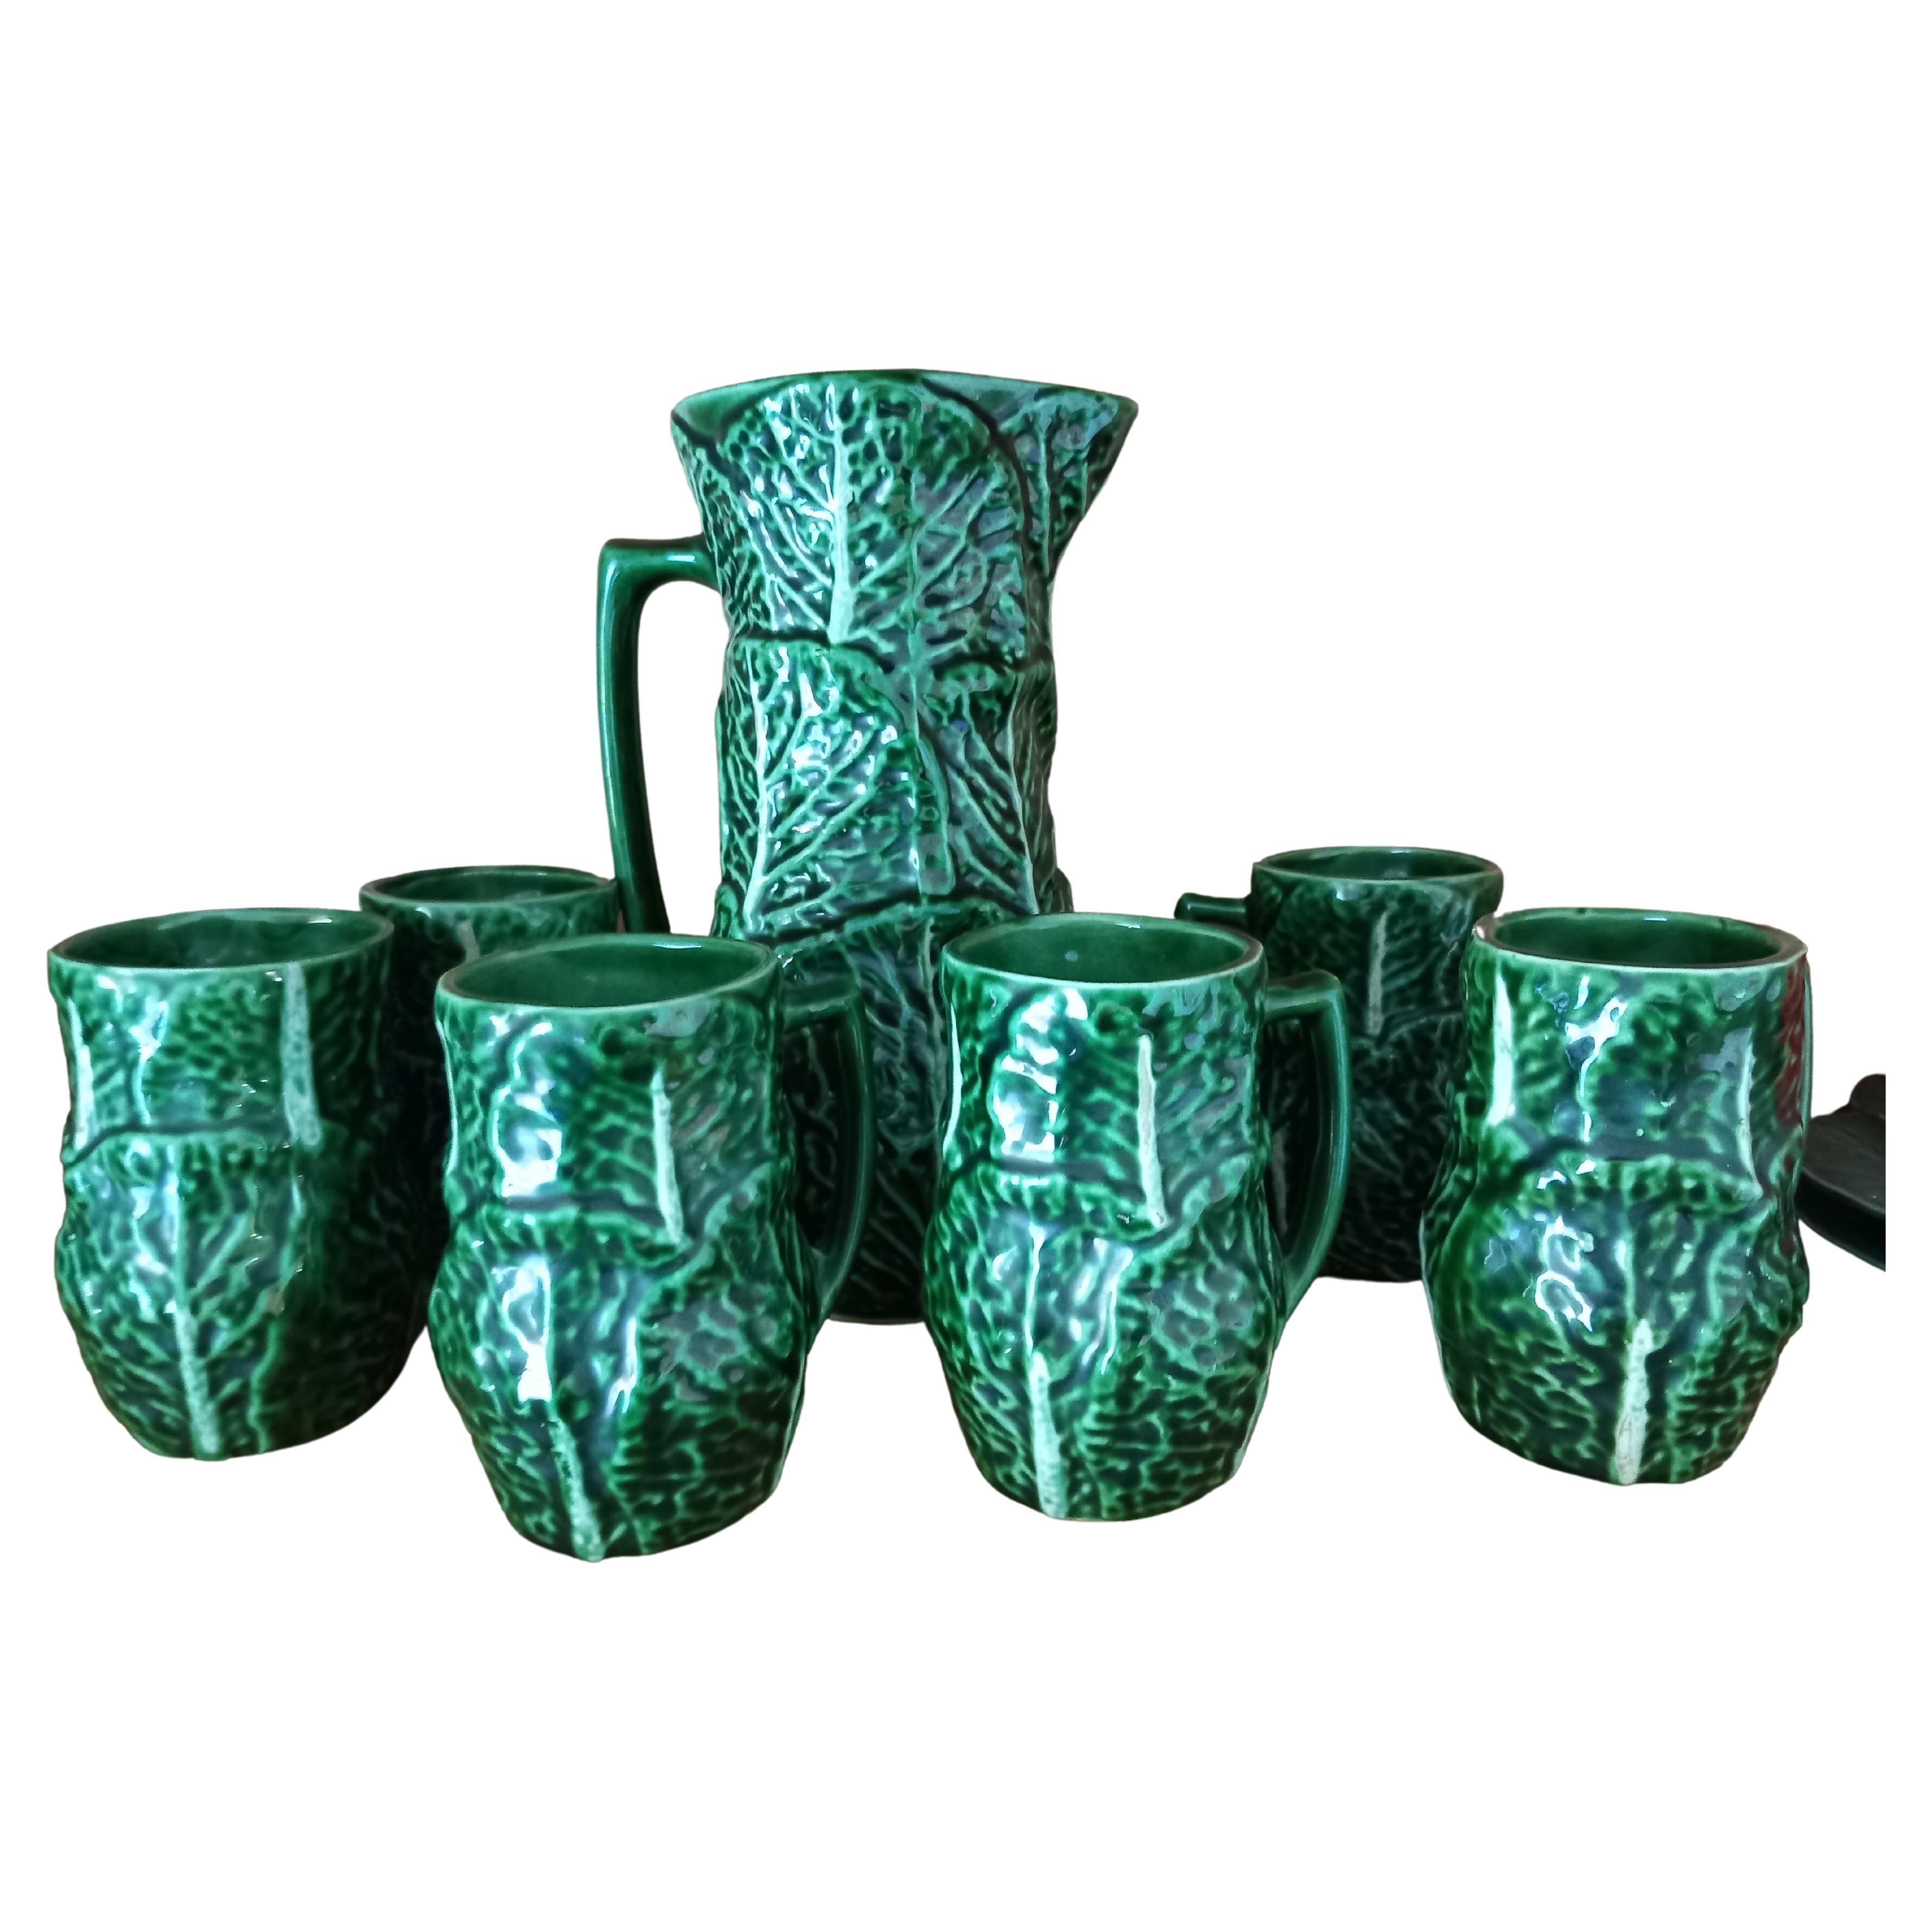 Set aus Majolika-Keramikkrug und 6 Becherbechern in Form eines Cabbage (Der Preis bezieht sich auf das Set)